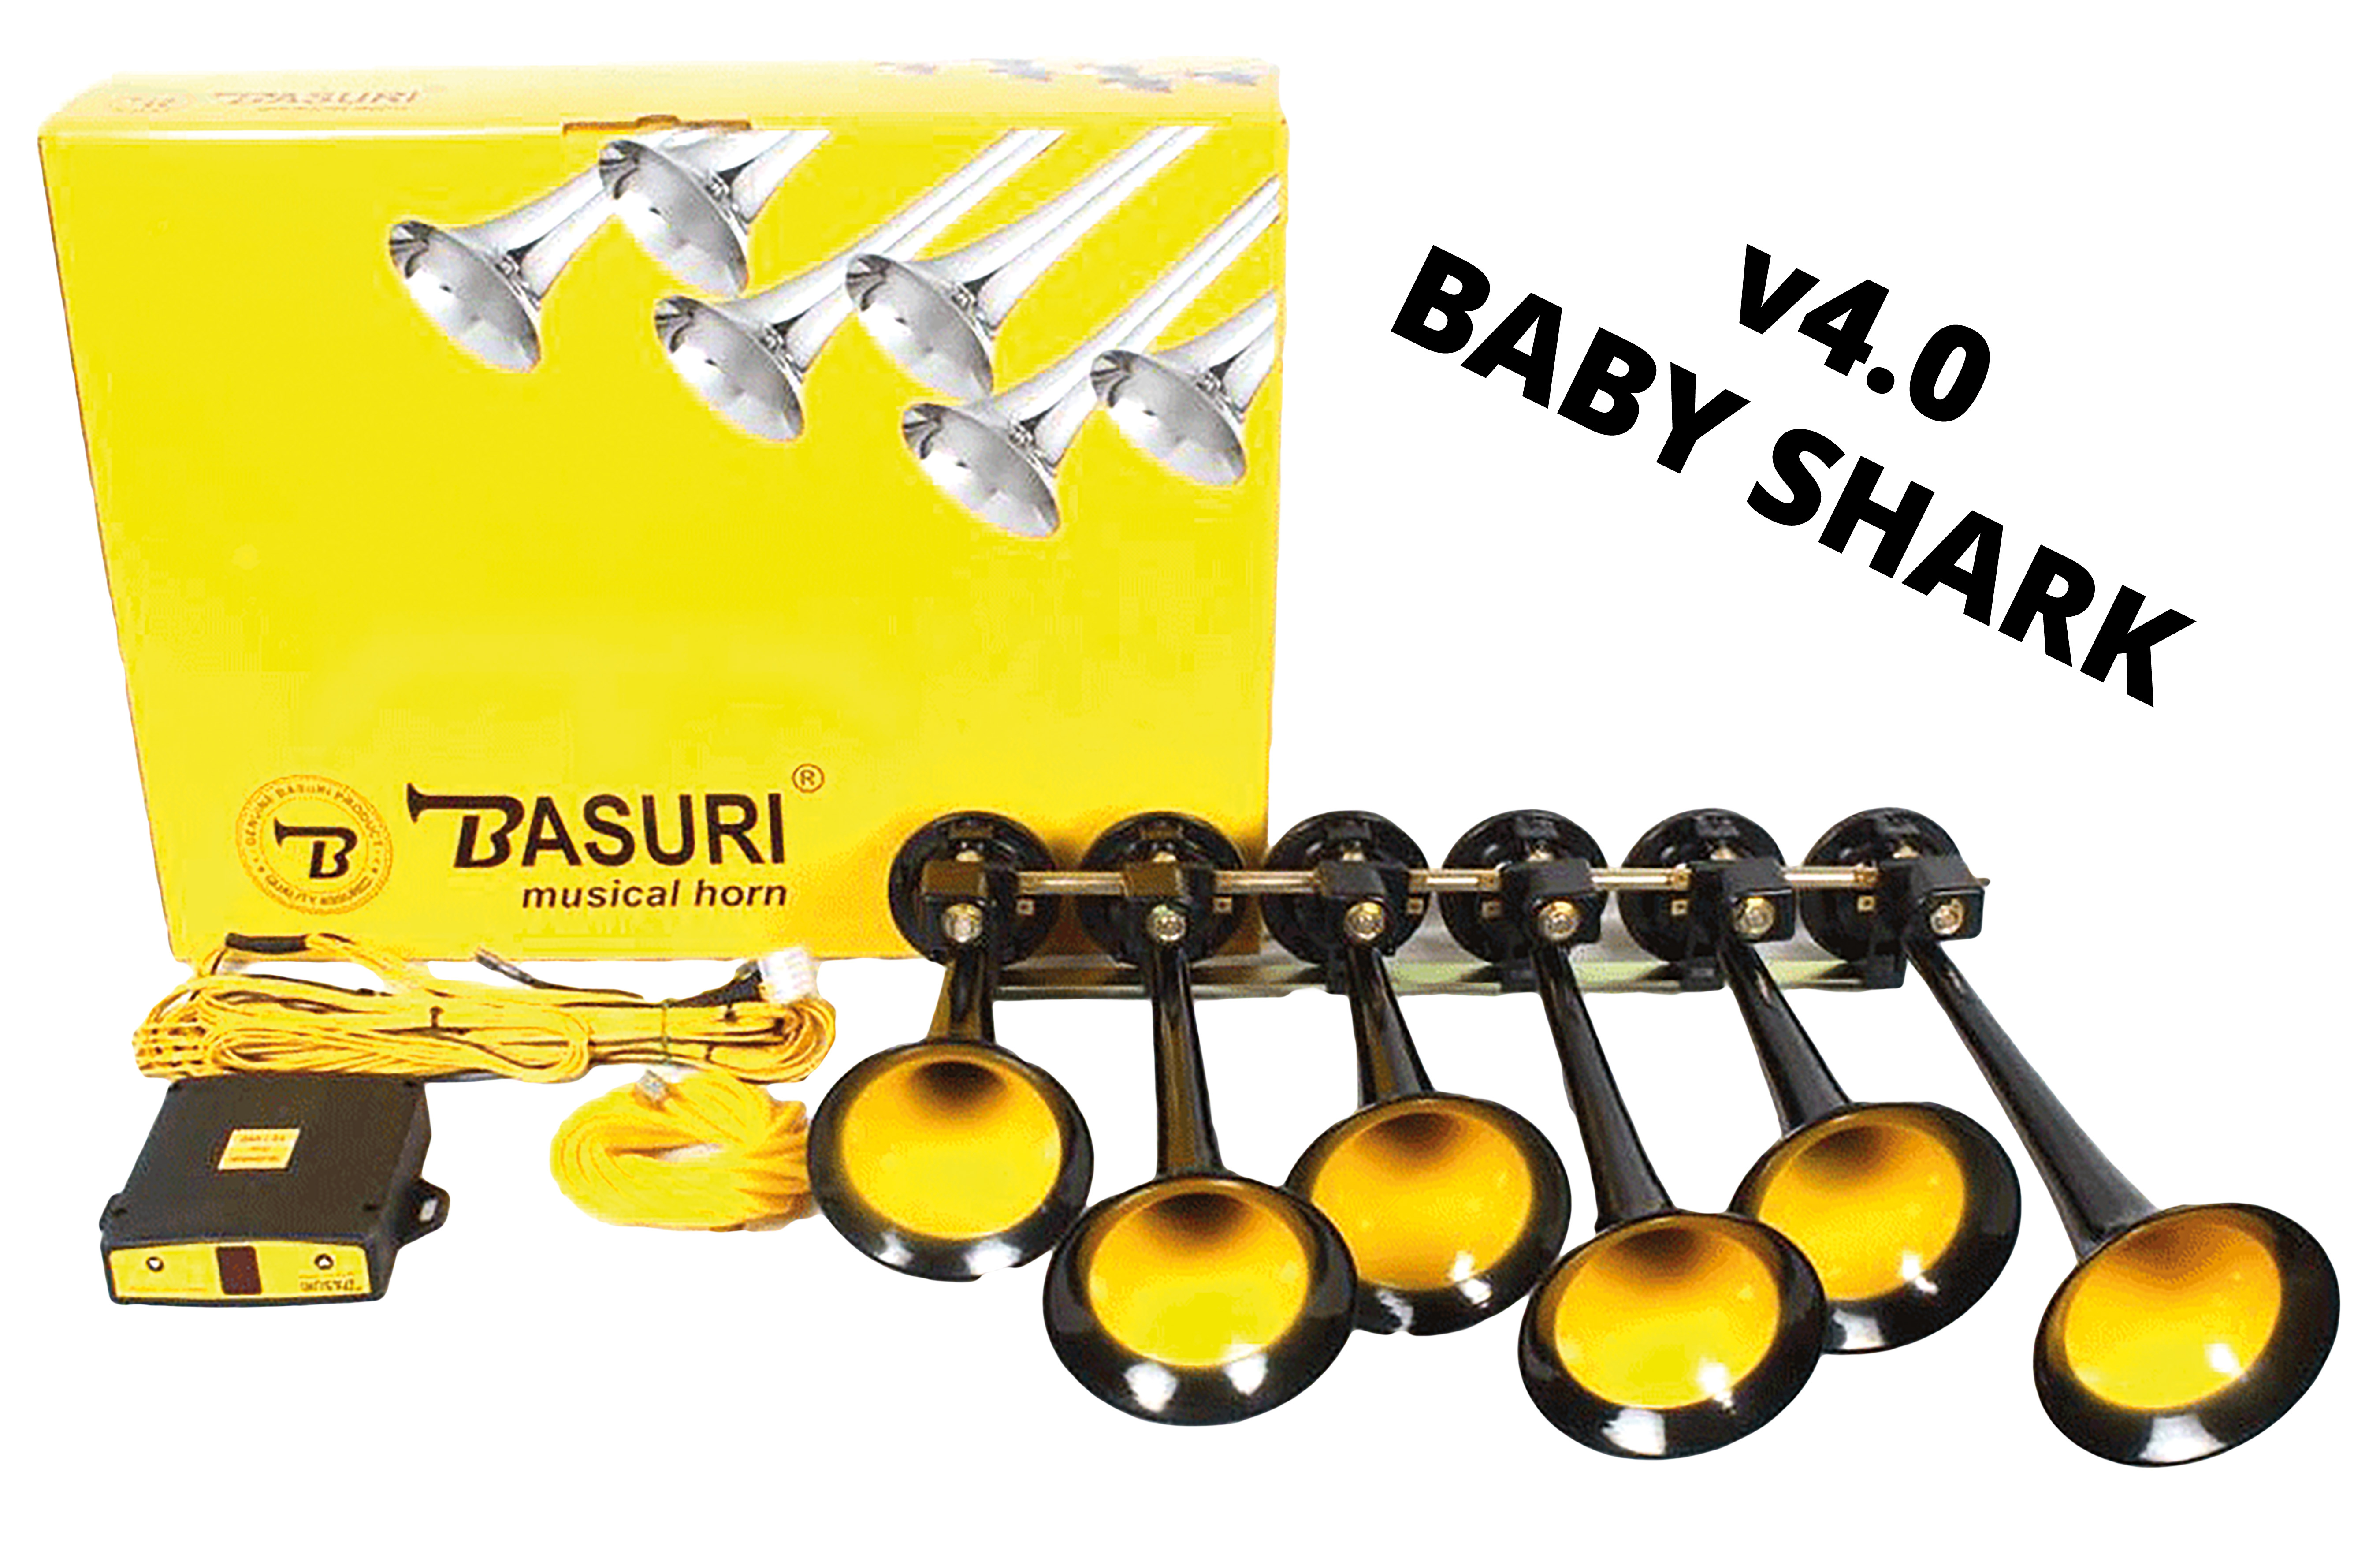 https://sn-truckstyling.com/media/image/83/71/20/Basuri-baby-shark-v4.jpg